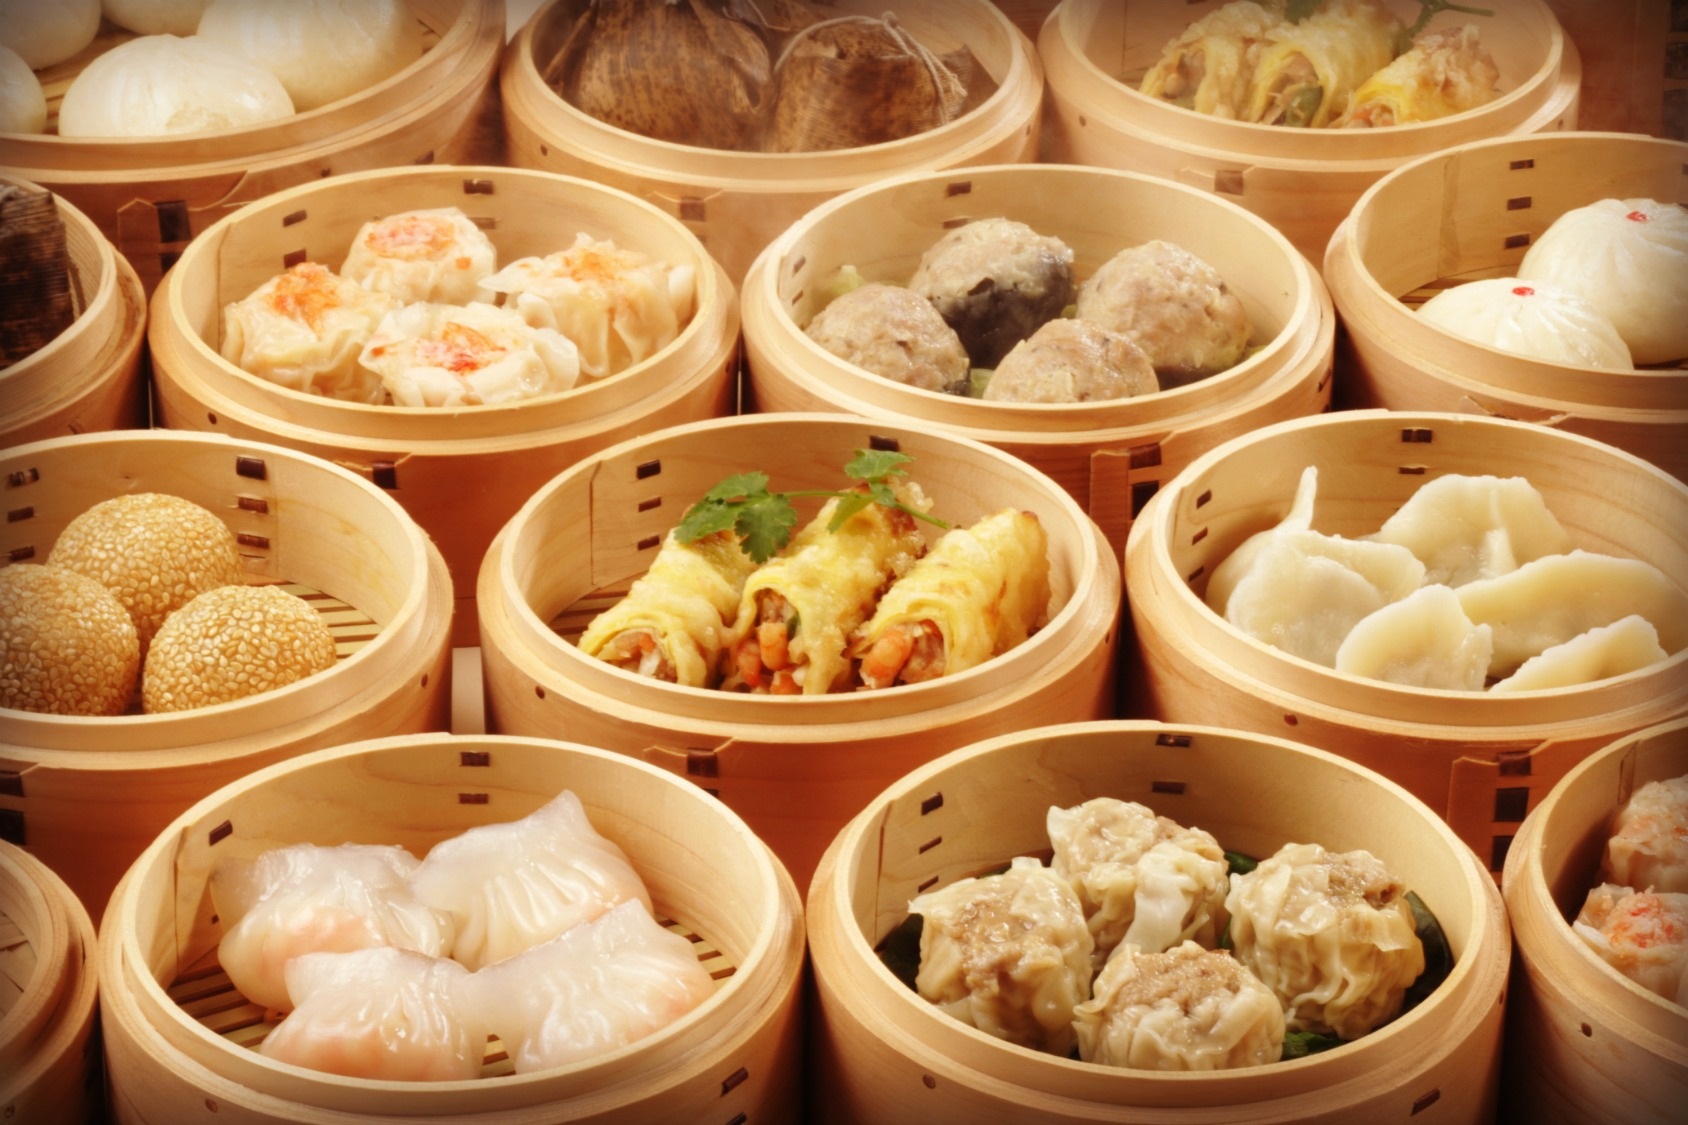 Văn hóa ẩm thực Singapore nổi tiếng với nền ẩm thực đa quốc gia